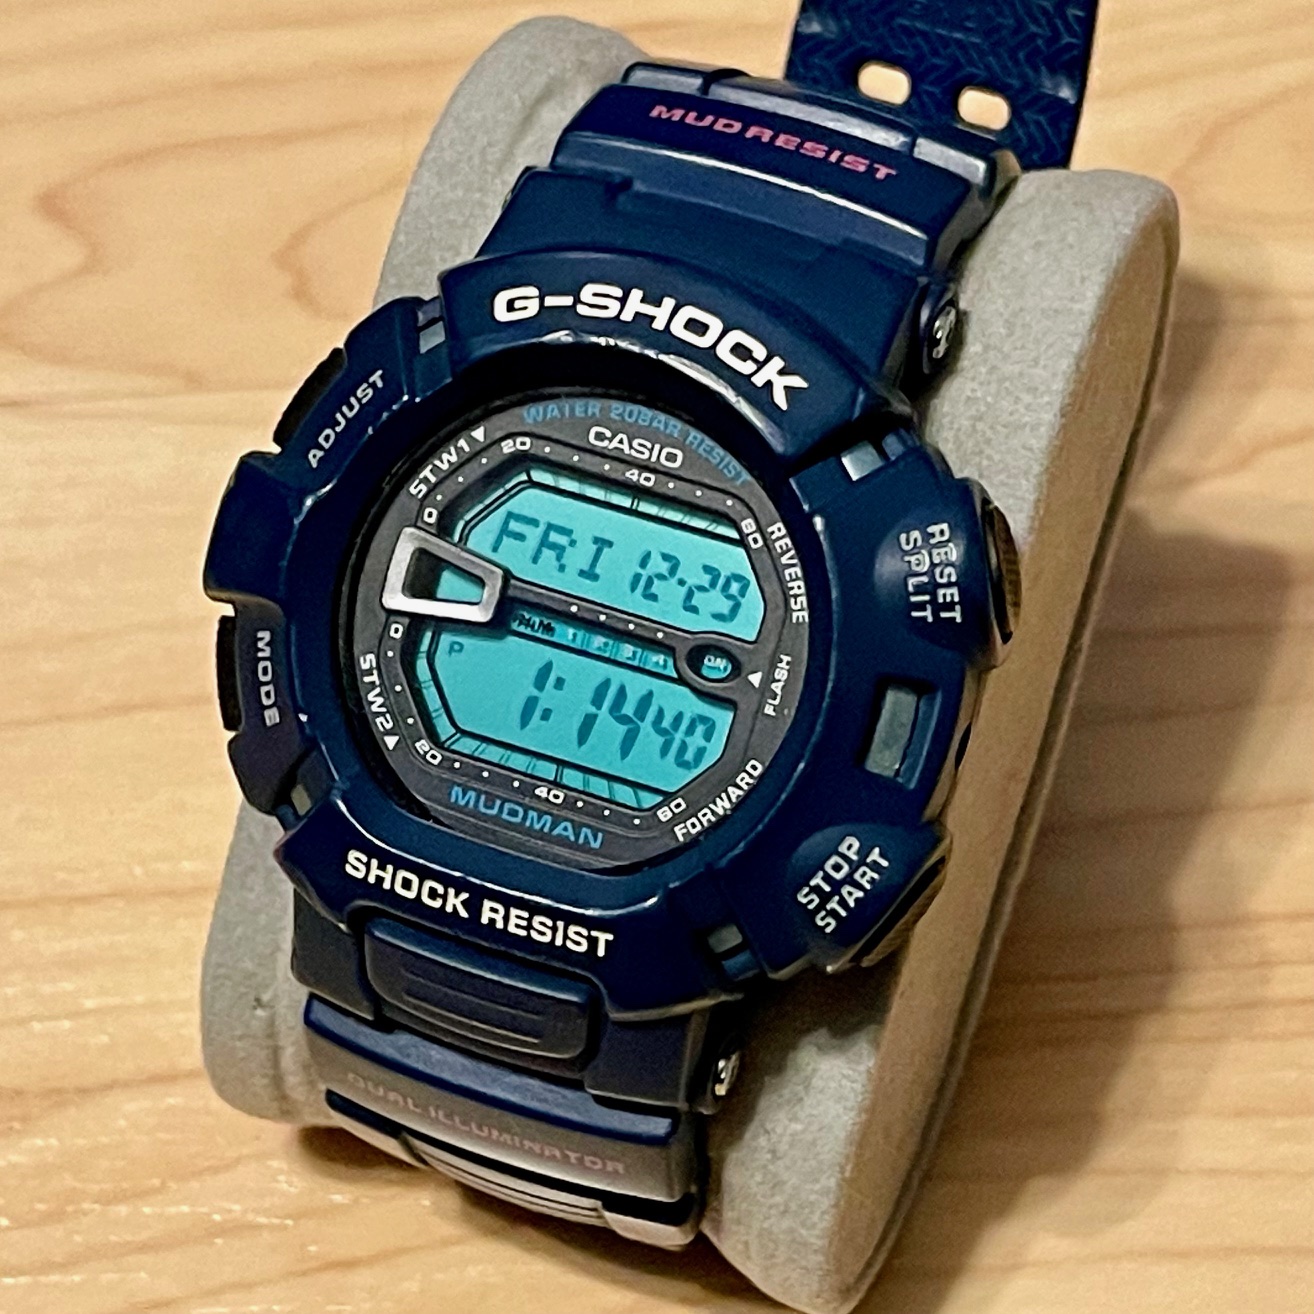 WTS] Casio G-Shock G-9000MX-2 Mudman Blue LCD Digital Watch G9000 